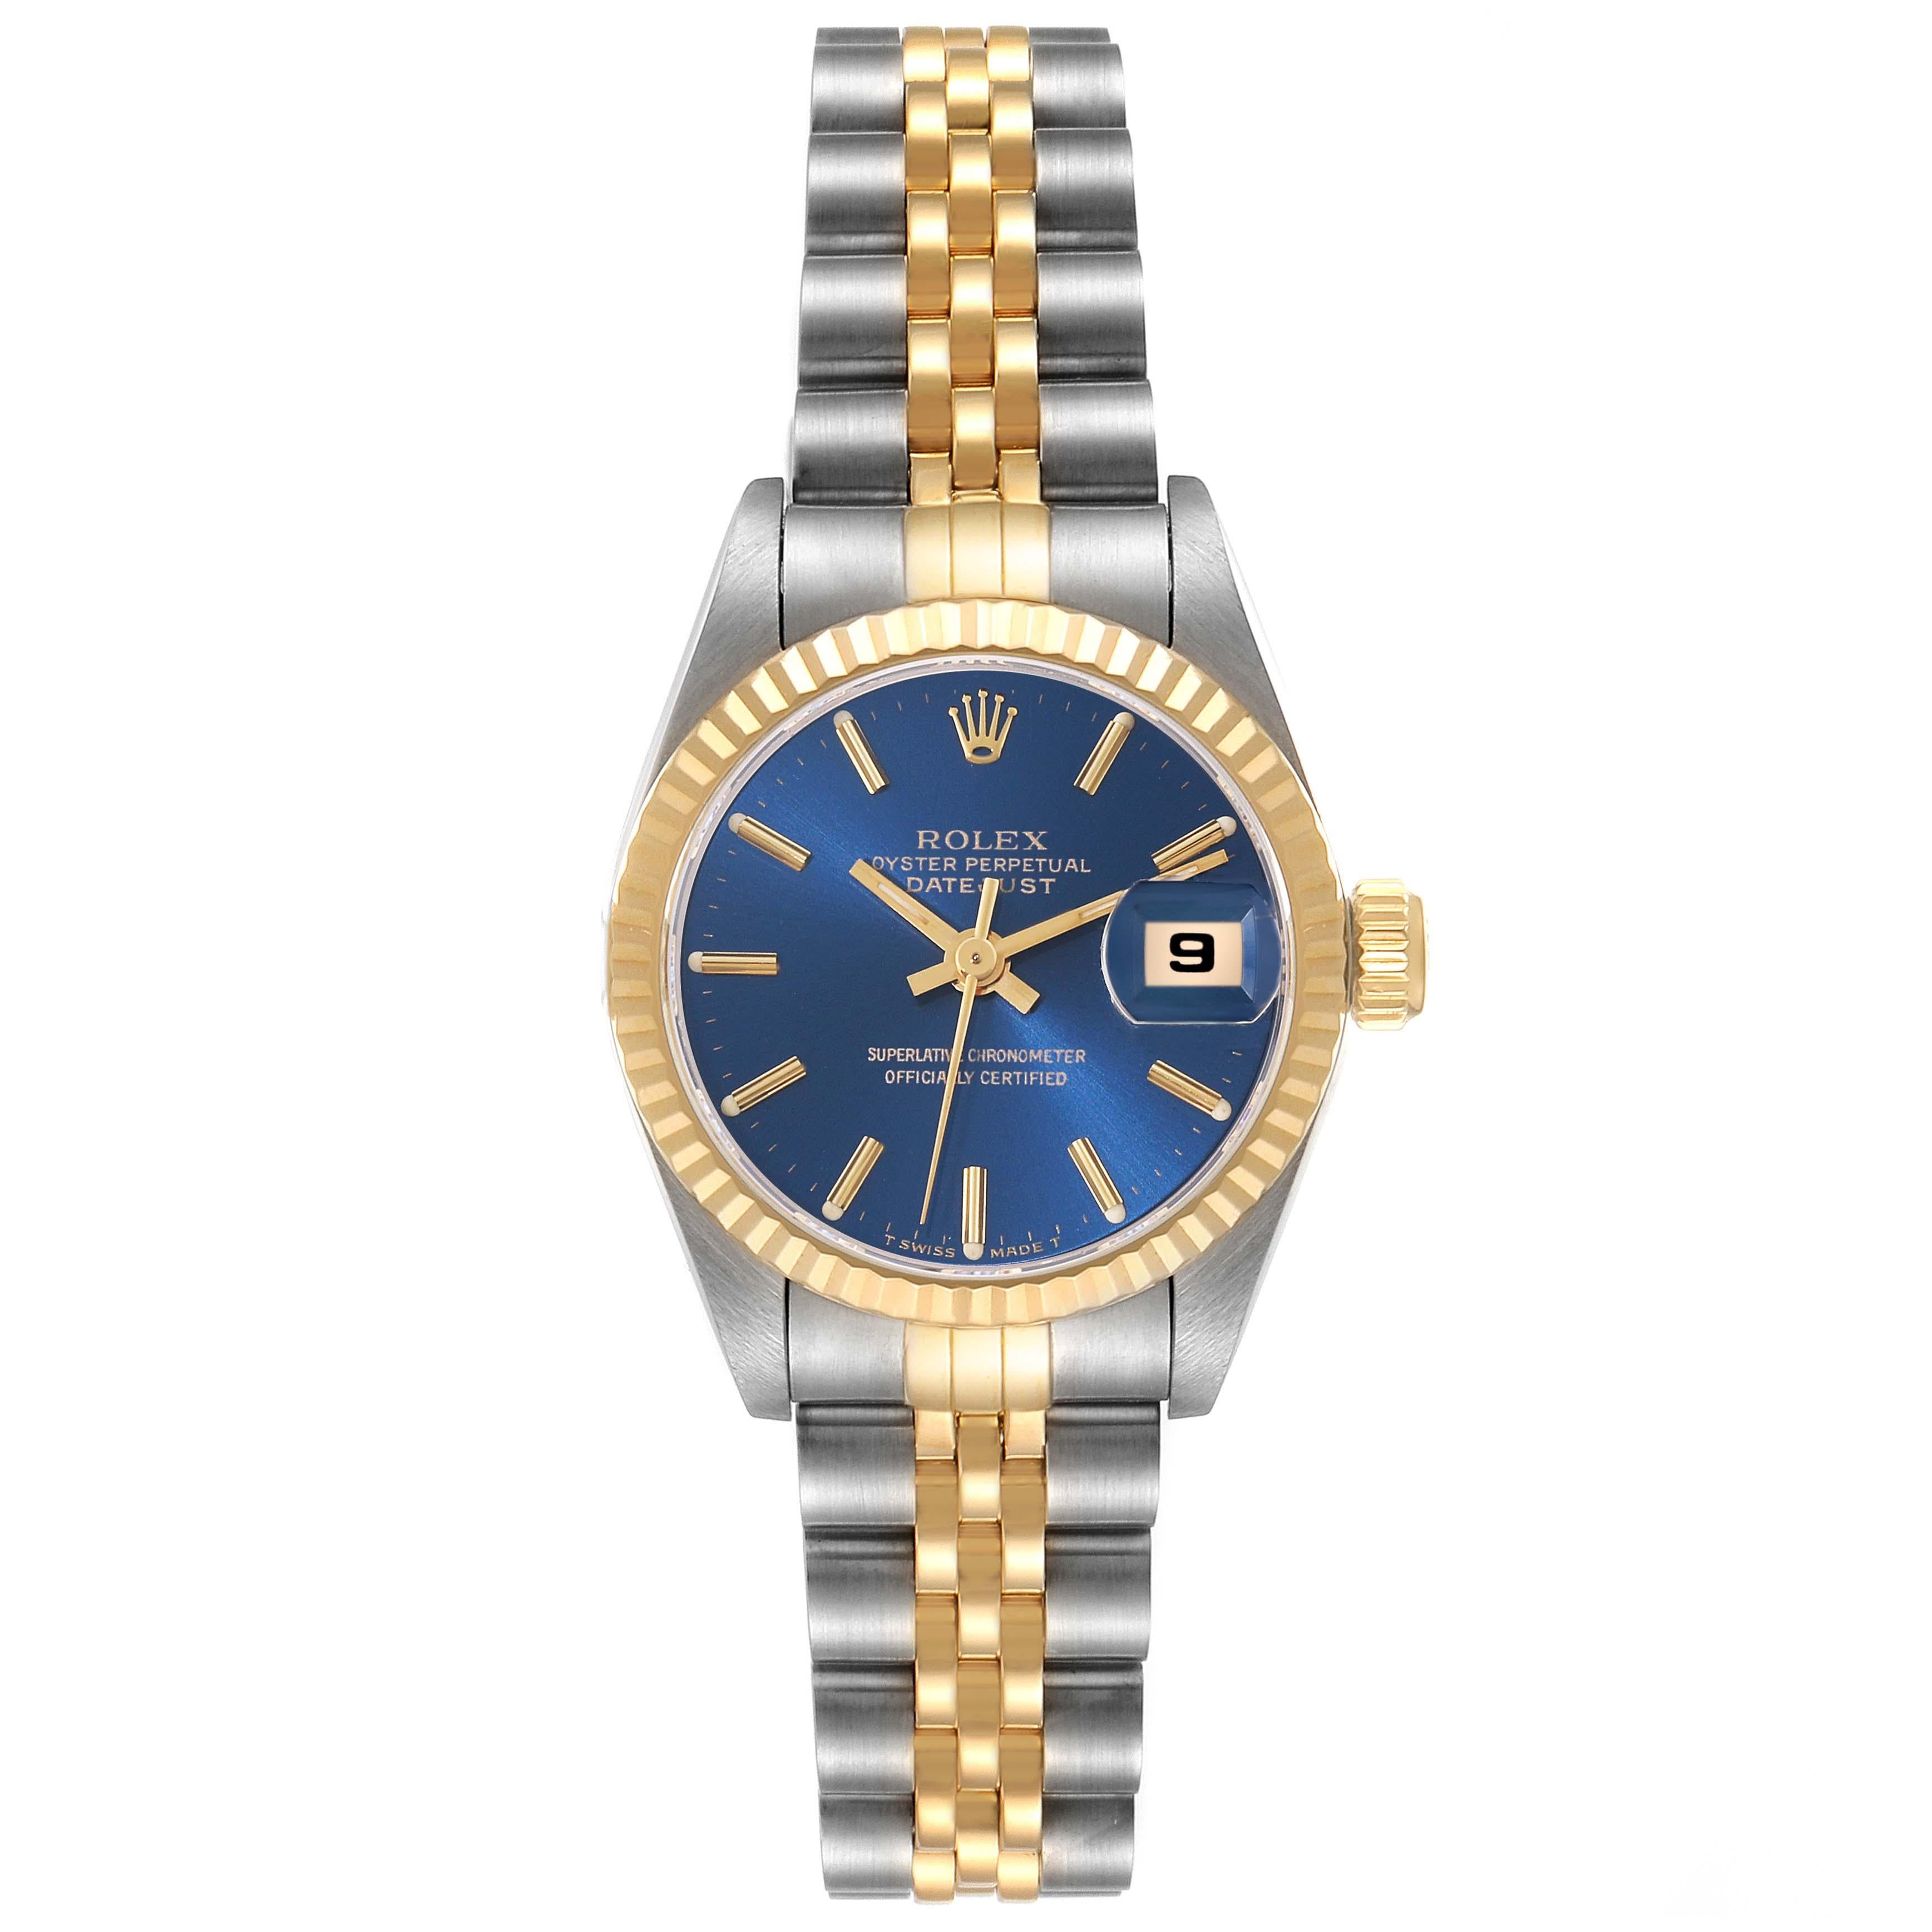 Rolex Datejust Blue Dial Steel Yellow Gold Ladies Watch 69173. Mouvement automatique à remontage automatique, officiellement certifié chronomètre. Boîtier oyster en acier inoxydable de 26.0 mm de diamètre. Logo Rolex sur la couronne. Lunette